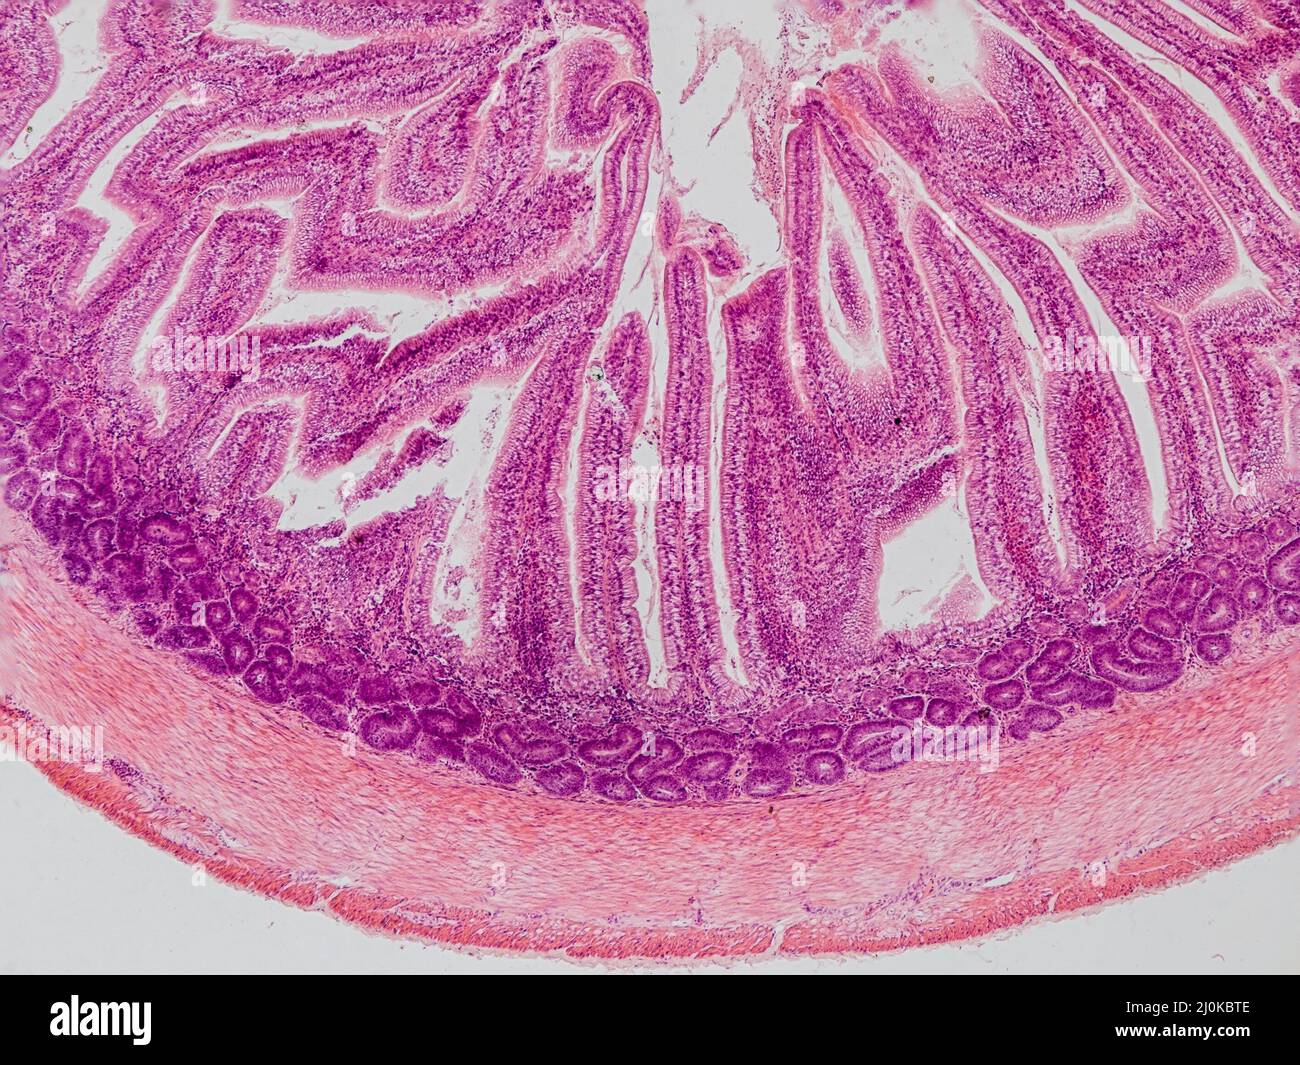 sezione trasversale dell'intestino di blackbird sotto il microscopio che mostra ghiandole intestinali e epitelio colonnare semplice - microscopio ottico x100 magnificatio Foto Stock